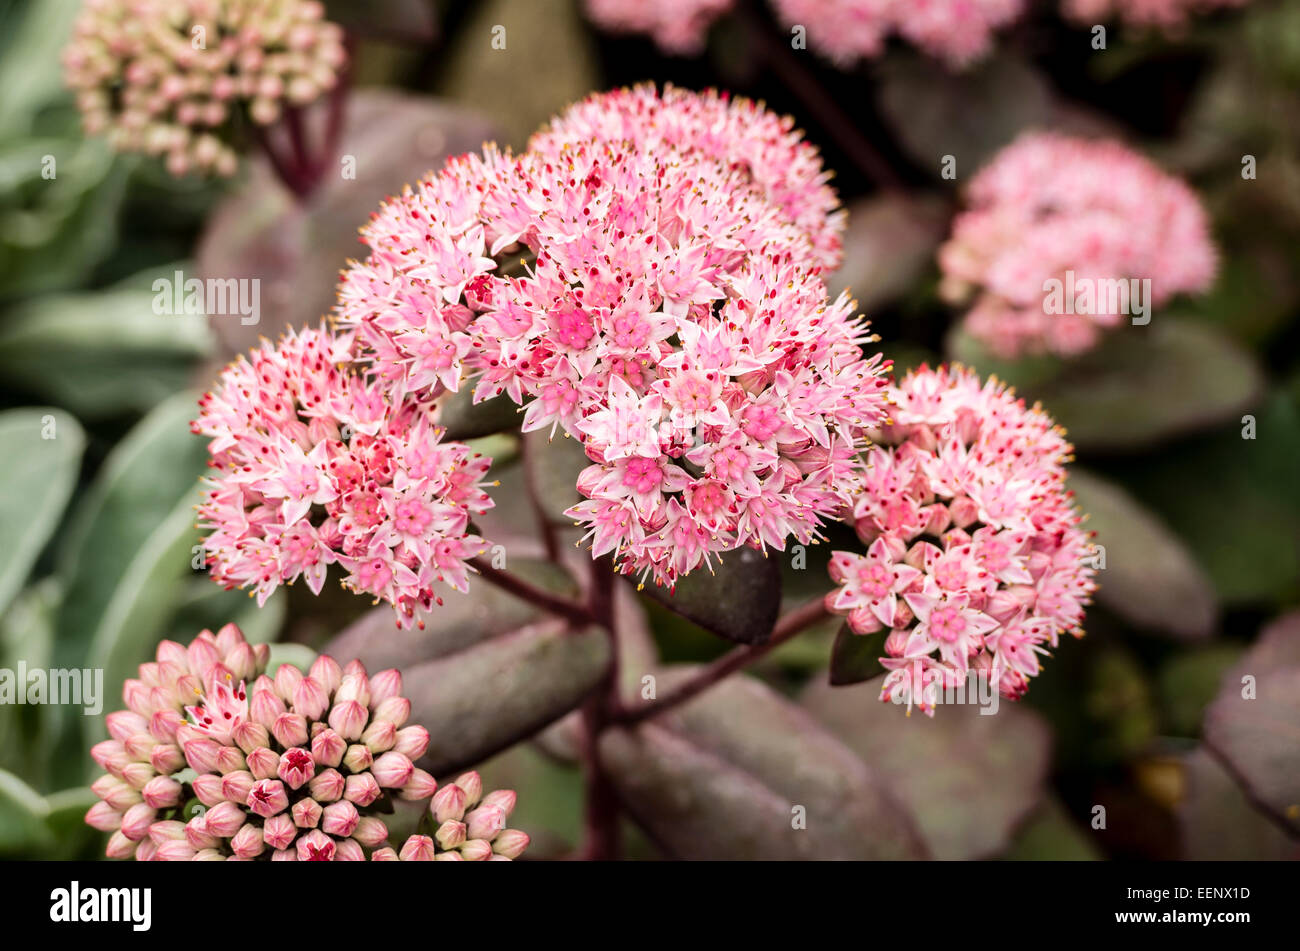 Pink flowers on Sedum Matrona in autumn Stock Photo